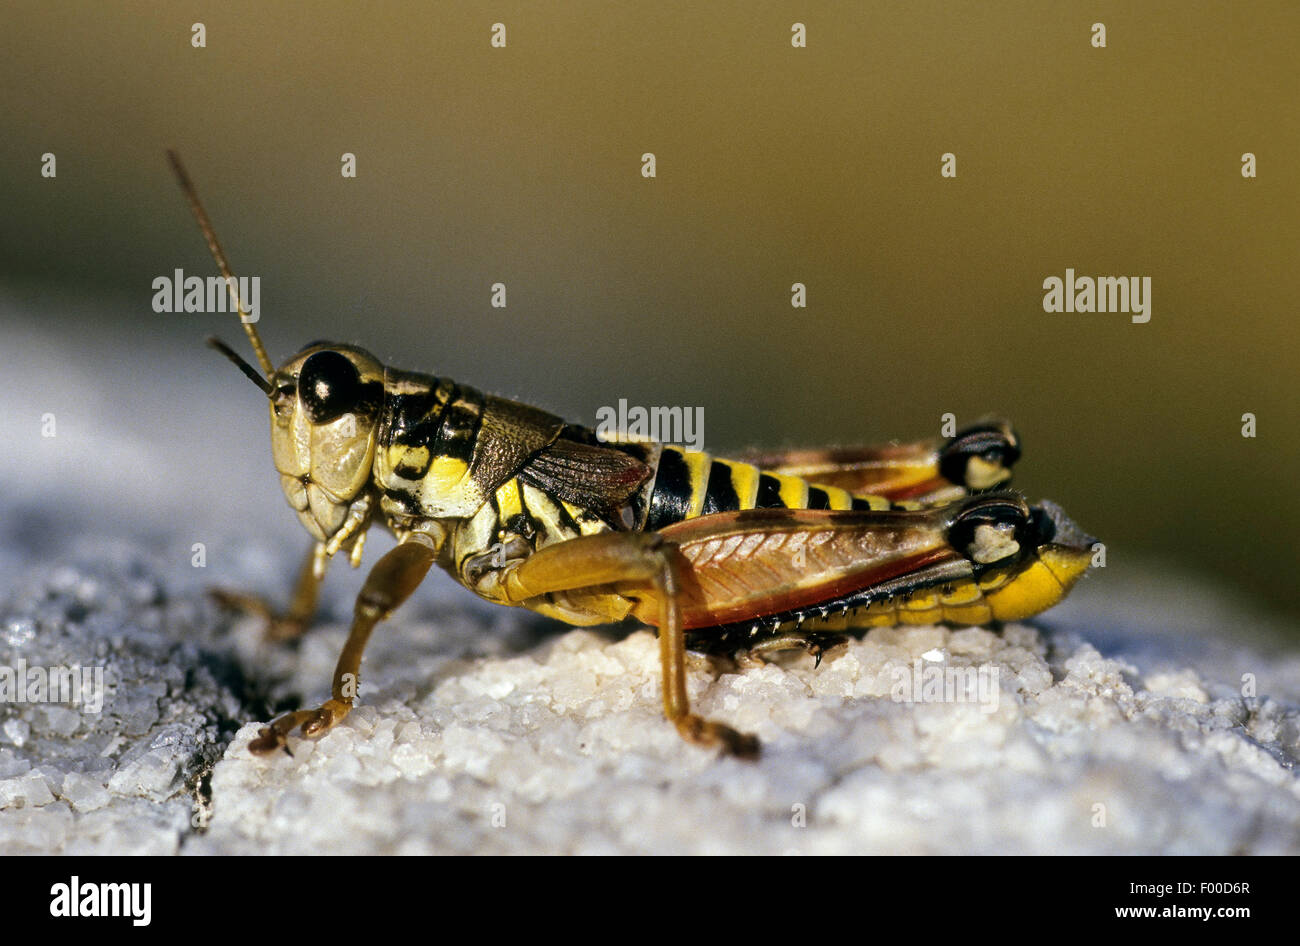 Brown mountain grasshopper (Podisma pedestris), on a stone, Germany Stock Photo